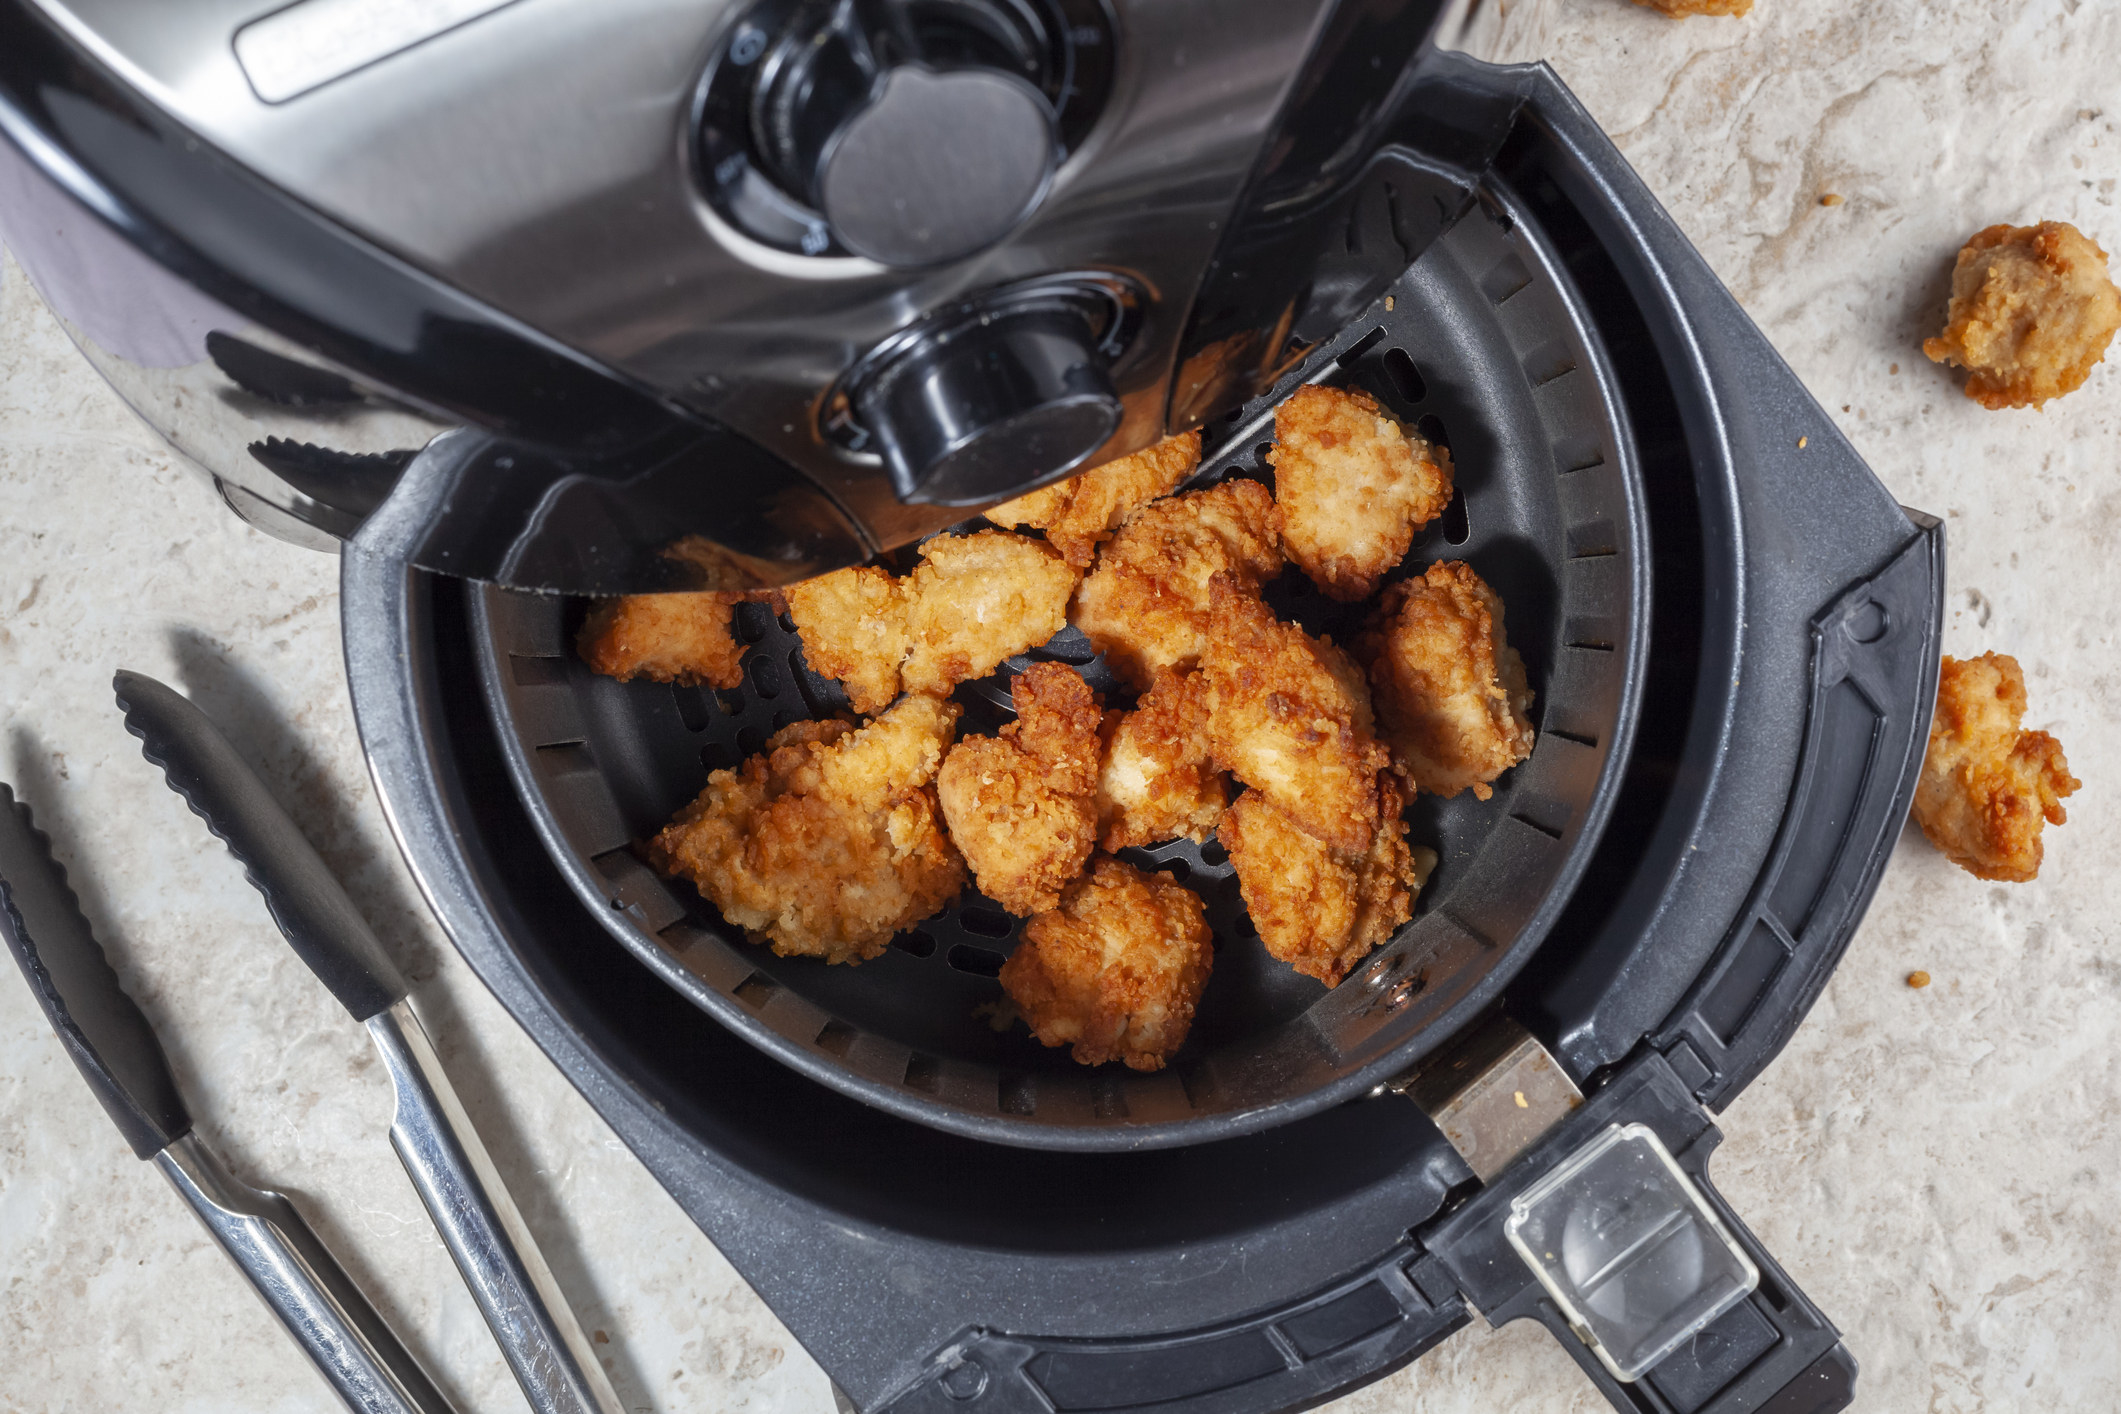 Chicken nuggets in an air fryer.